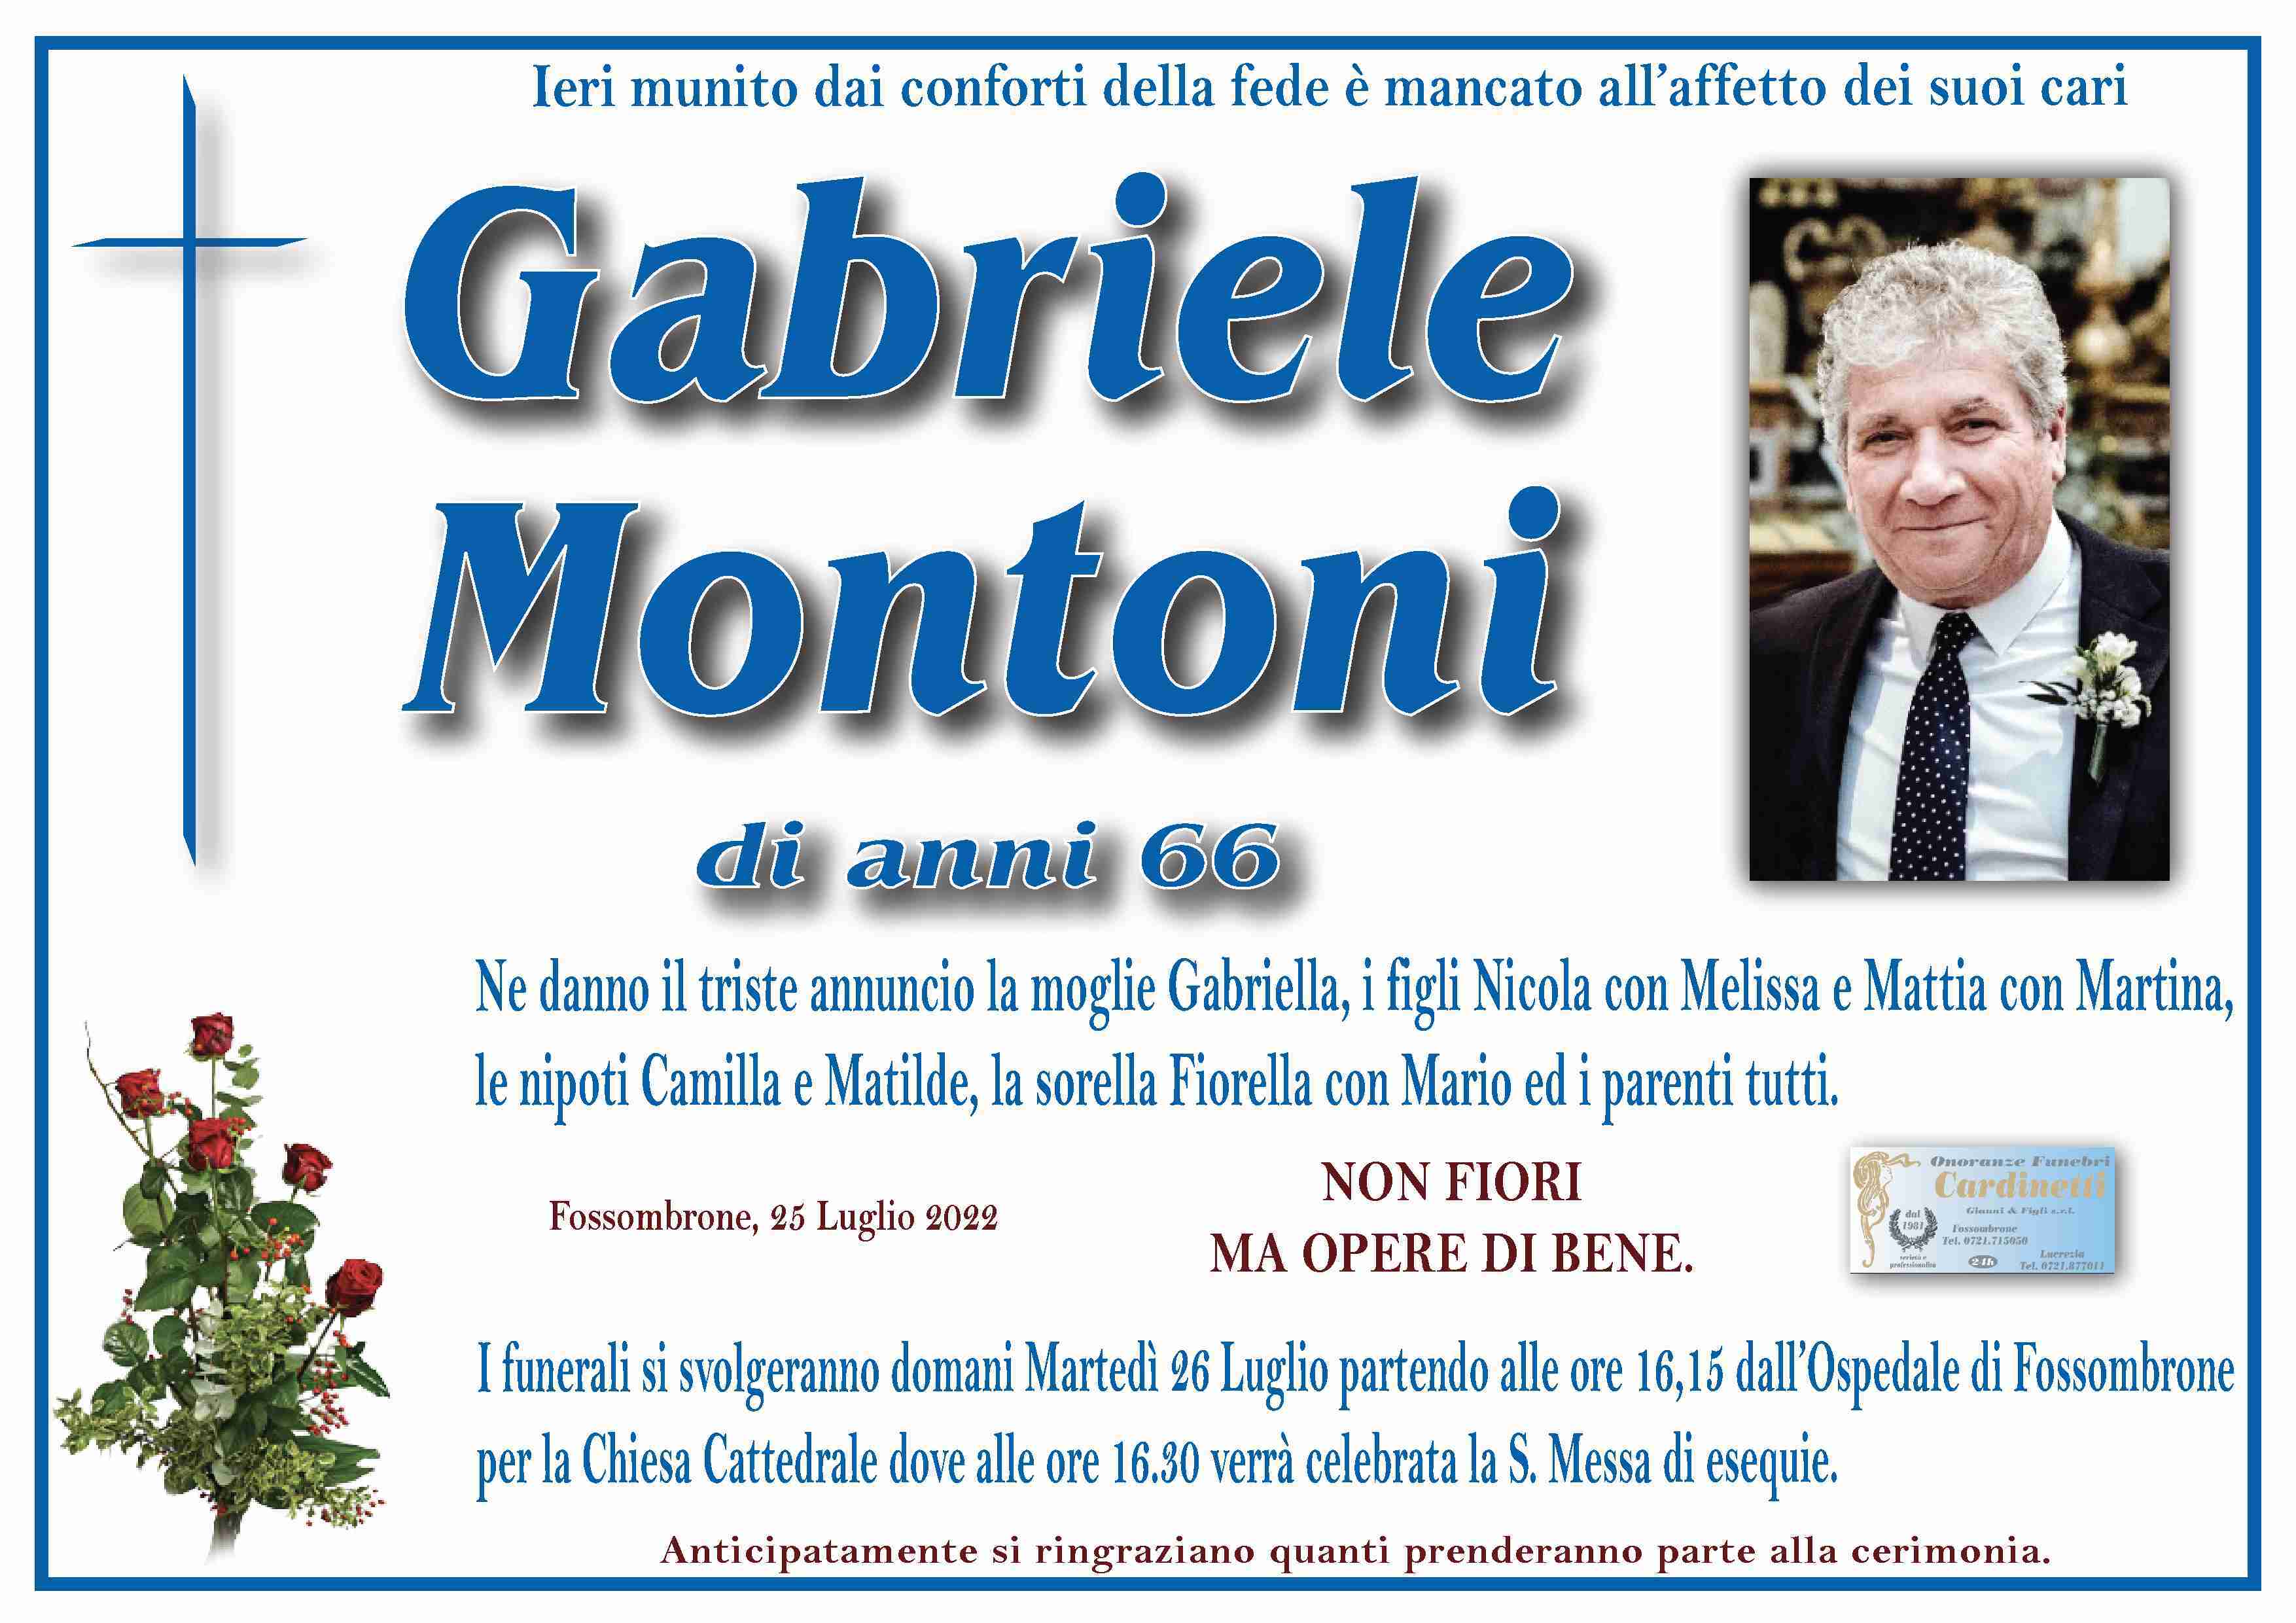 Gabriele Montoni